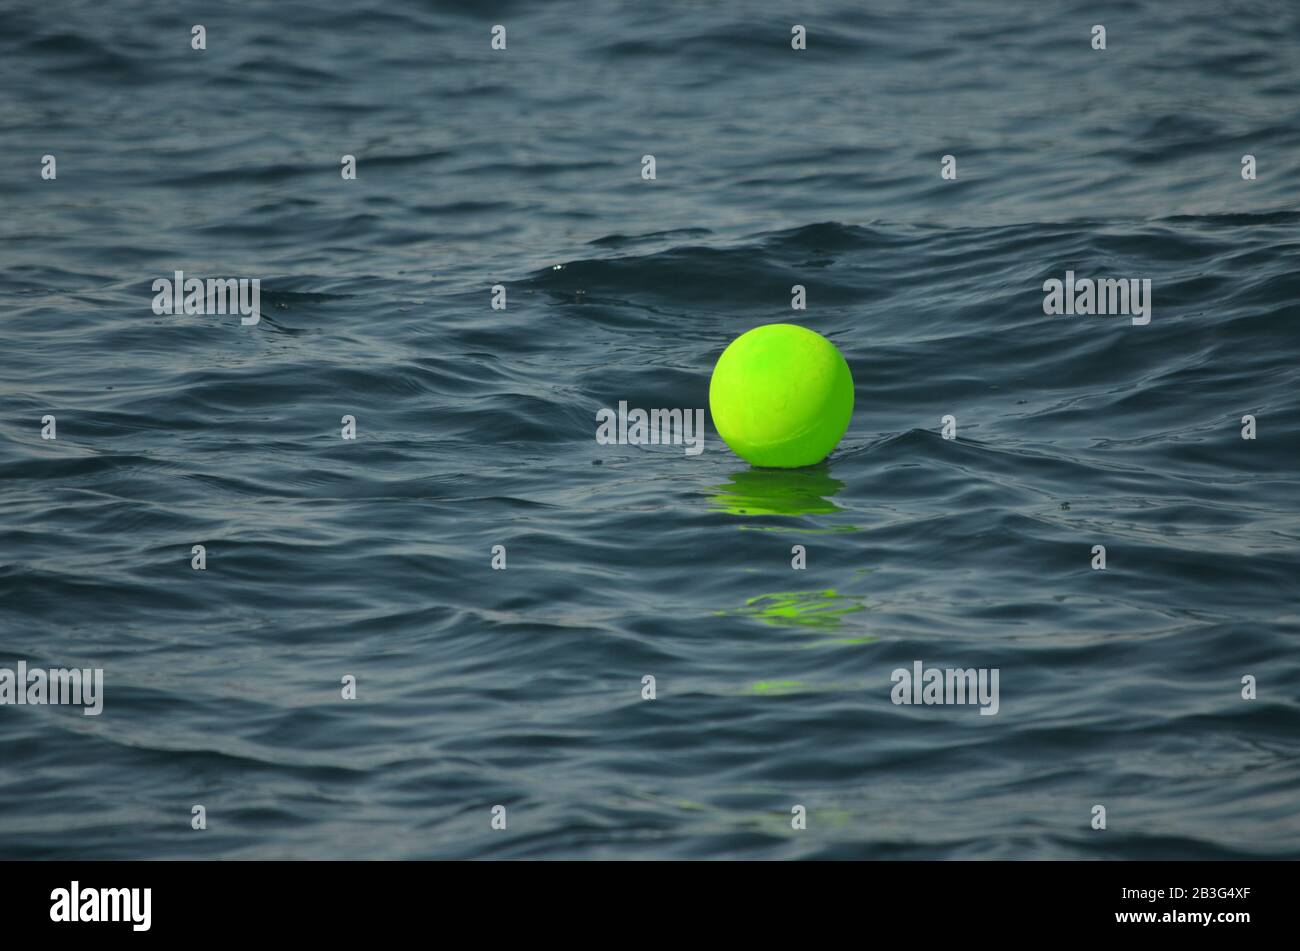 Neongrüner Heliumballon im Atlantik. Luftballons und andere Kunststoffe können durch Verschlucken oder Verflechtung das Leben im Meer schädigen. Stockfoto